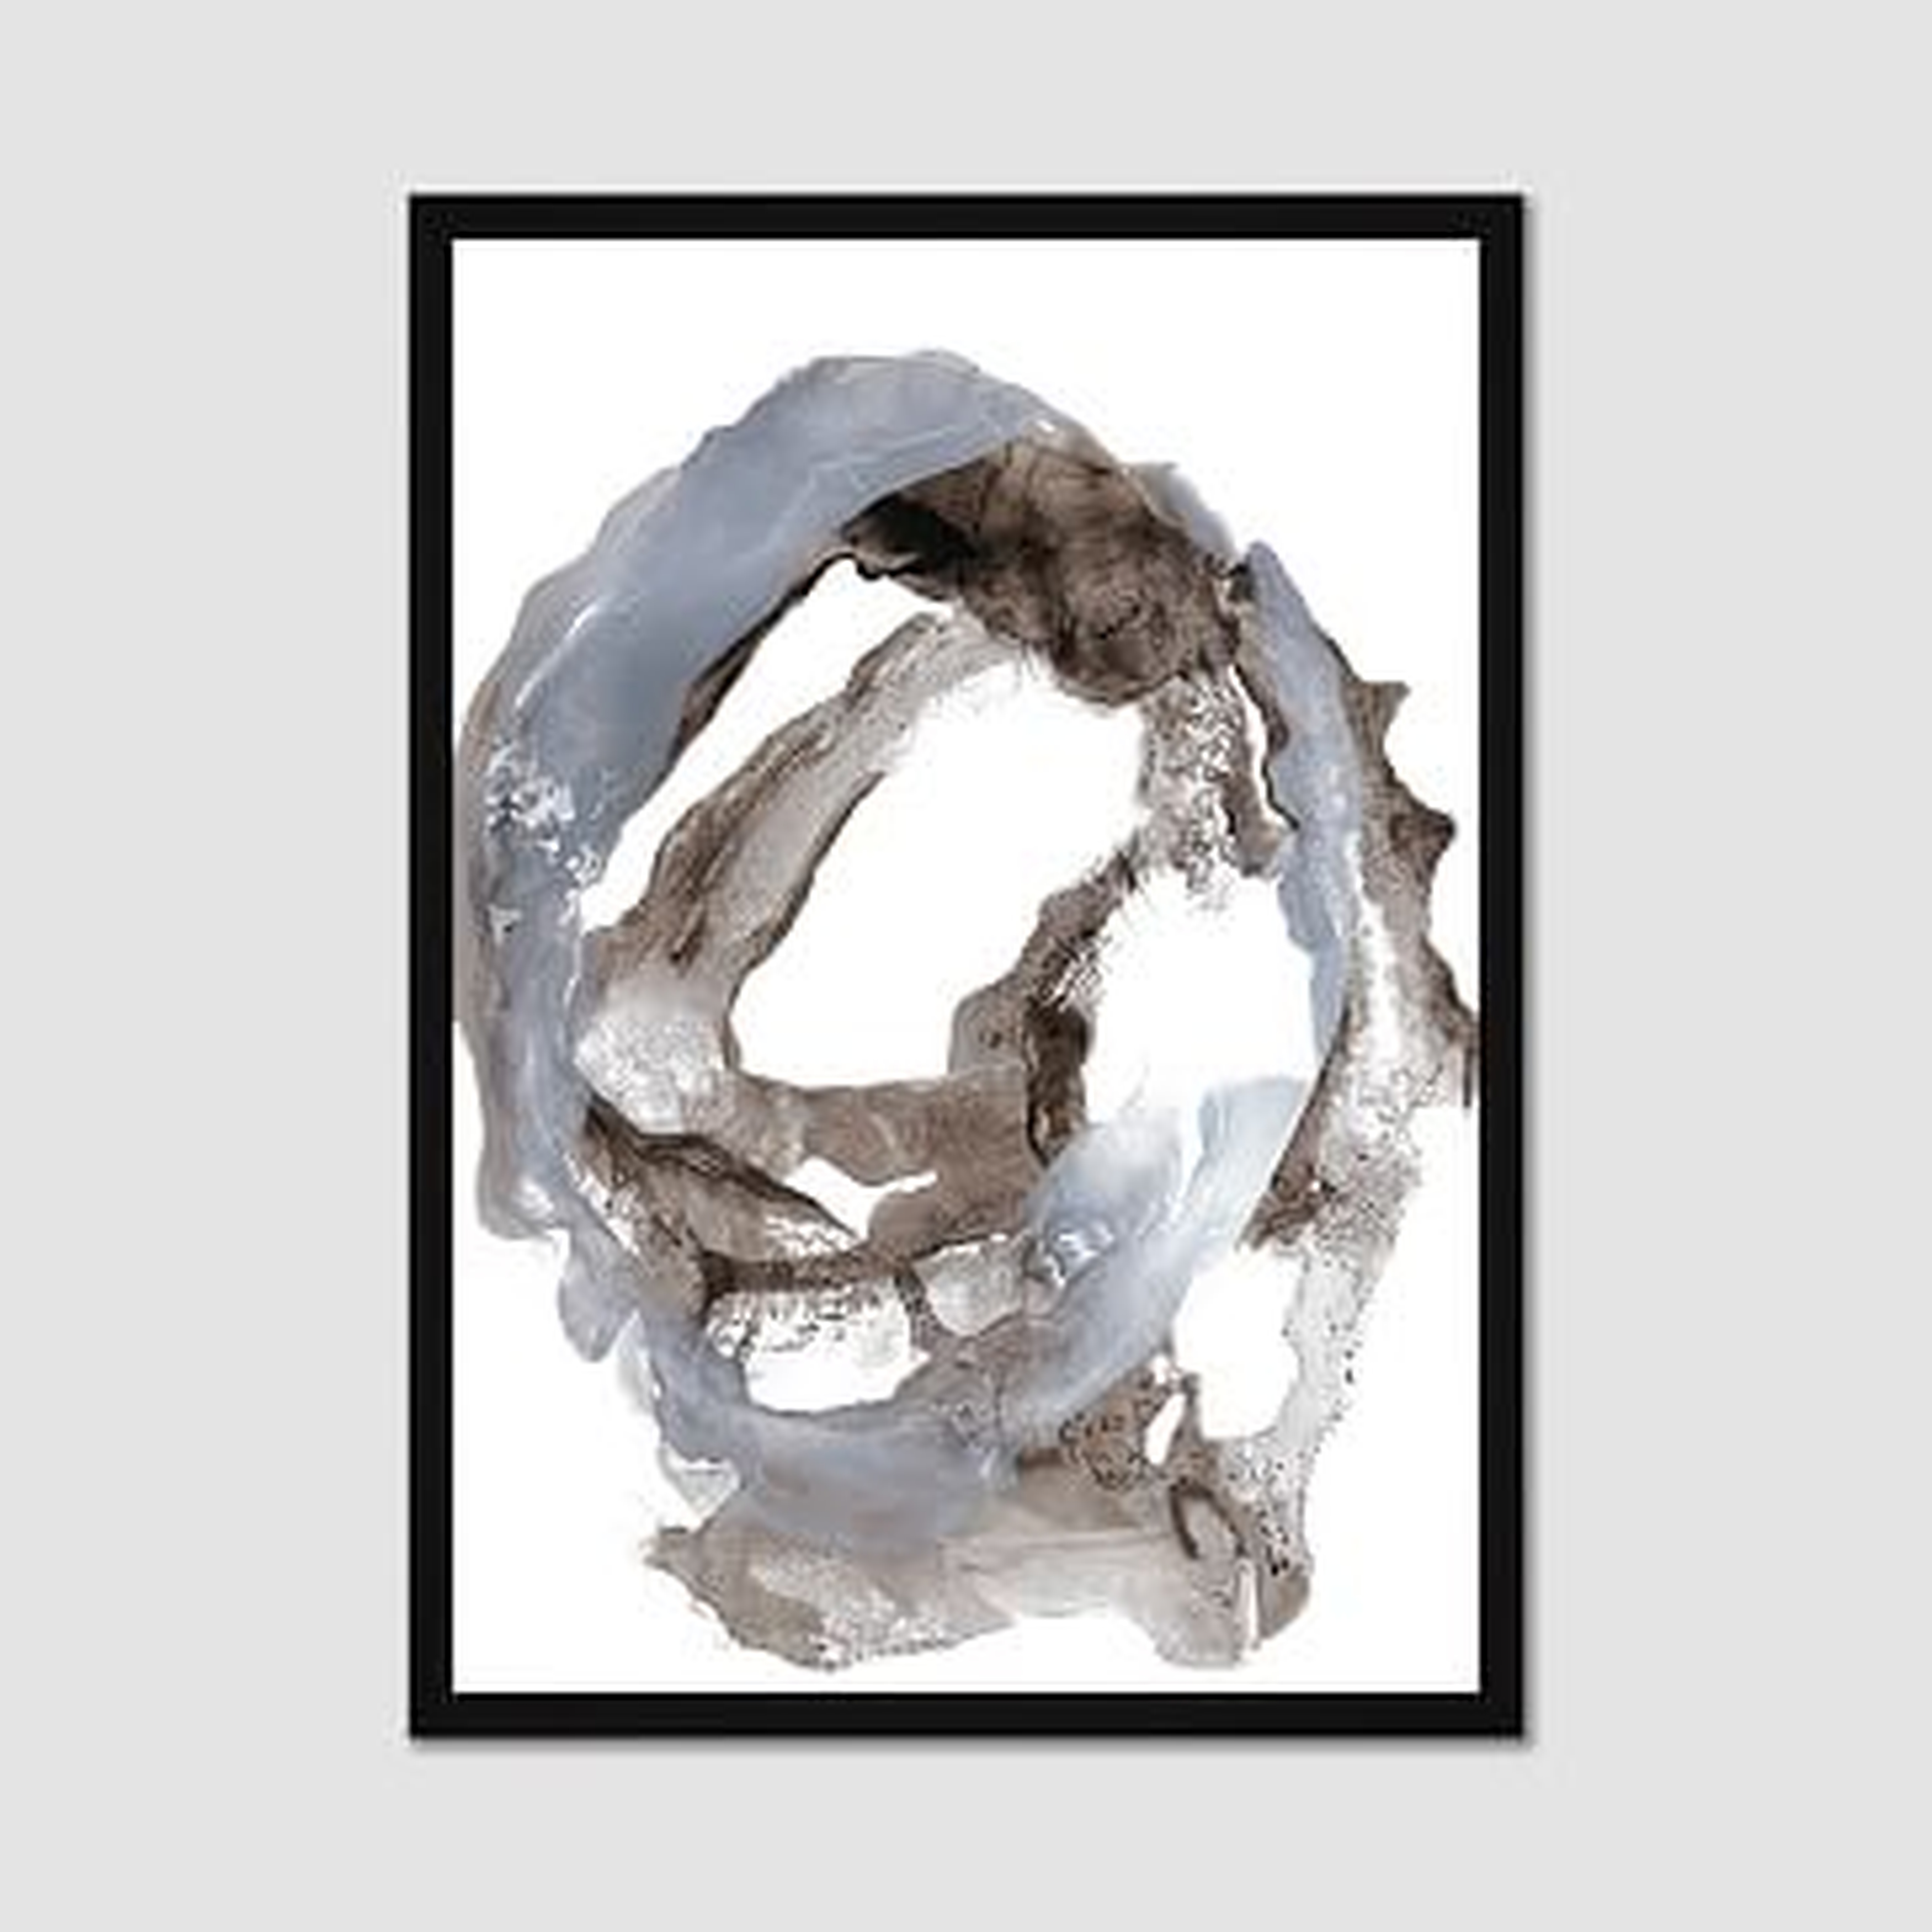 Framed Print, Gray Paintstroke, II, 20"x28" - West Elm